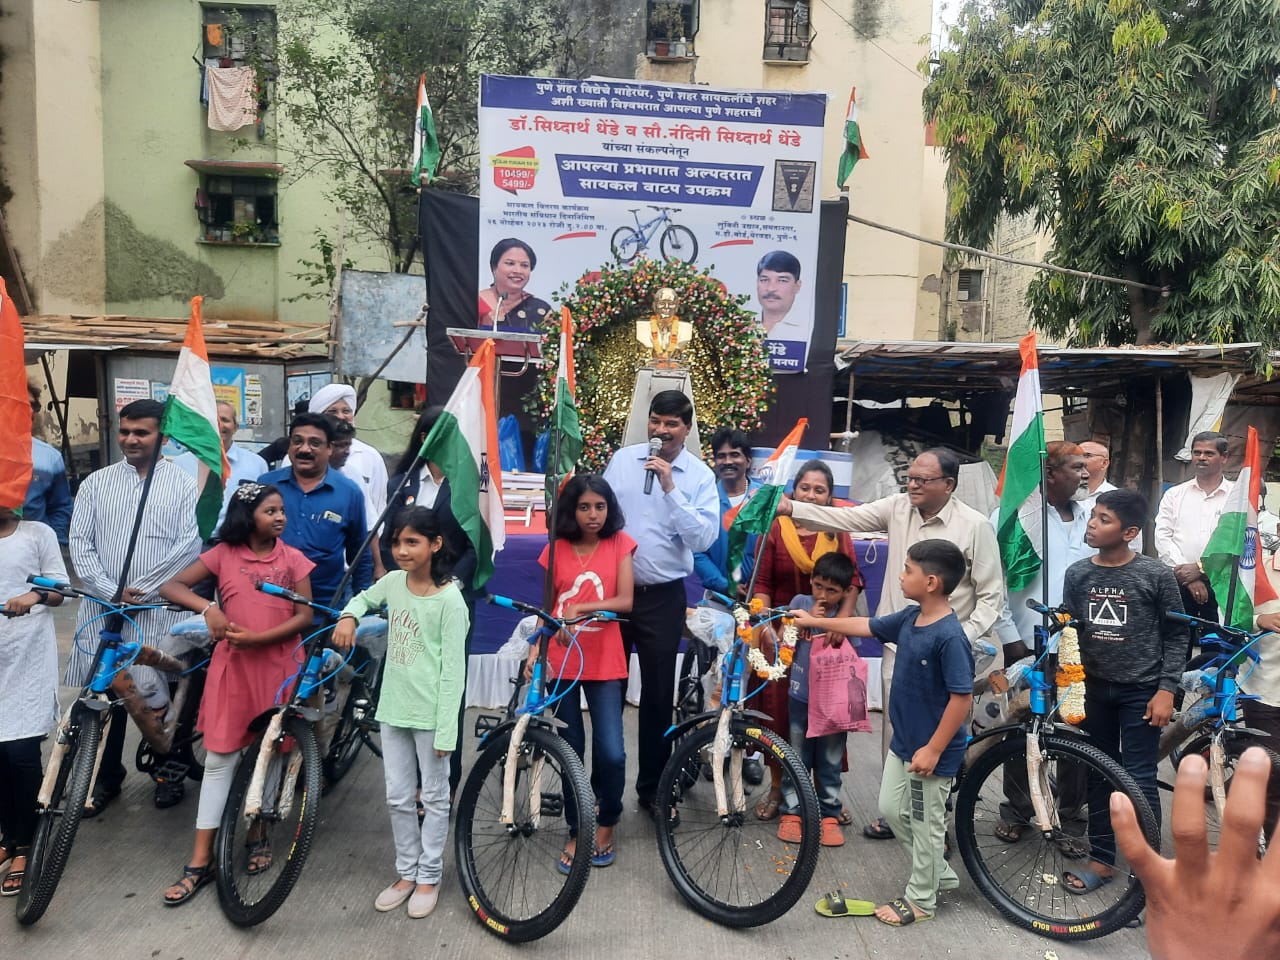 Constitution Day of India | संविधान दिनानिमित्त प्रभागात 50 जणांना सायकल वाटप | डॉ. सिद्धार्थ धेंडे यांचा उपक्रम